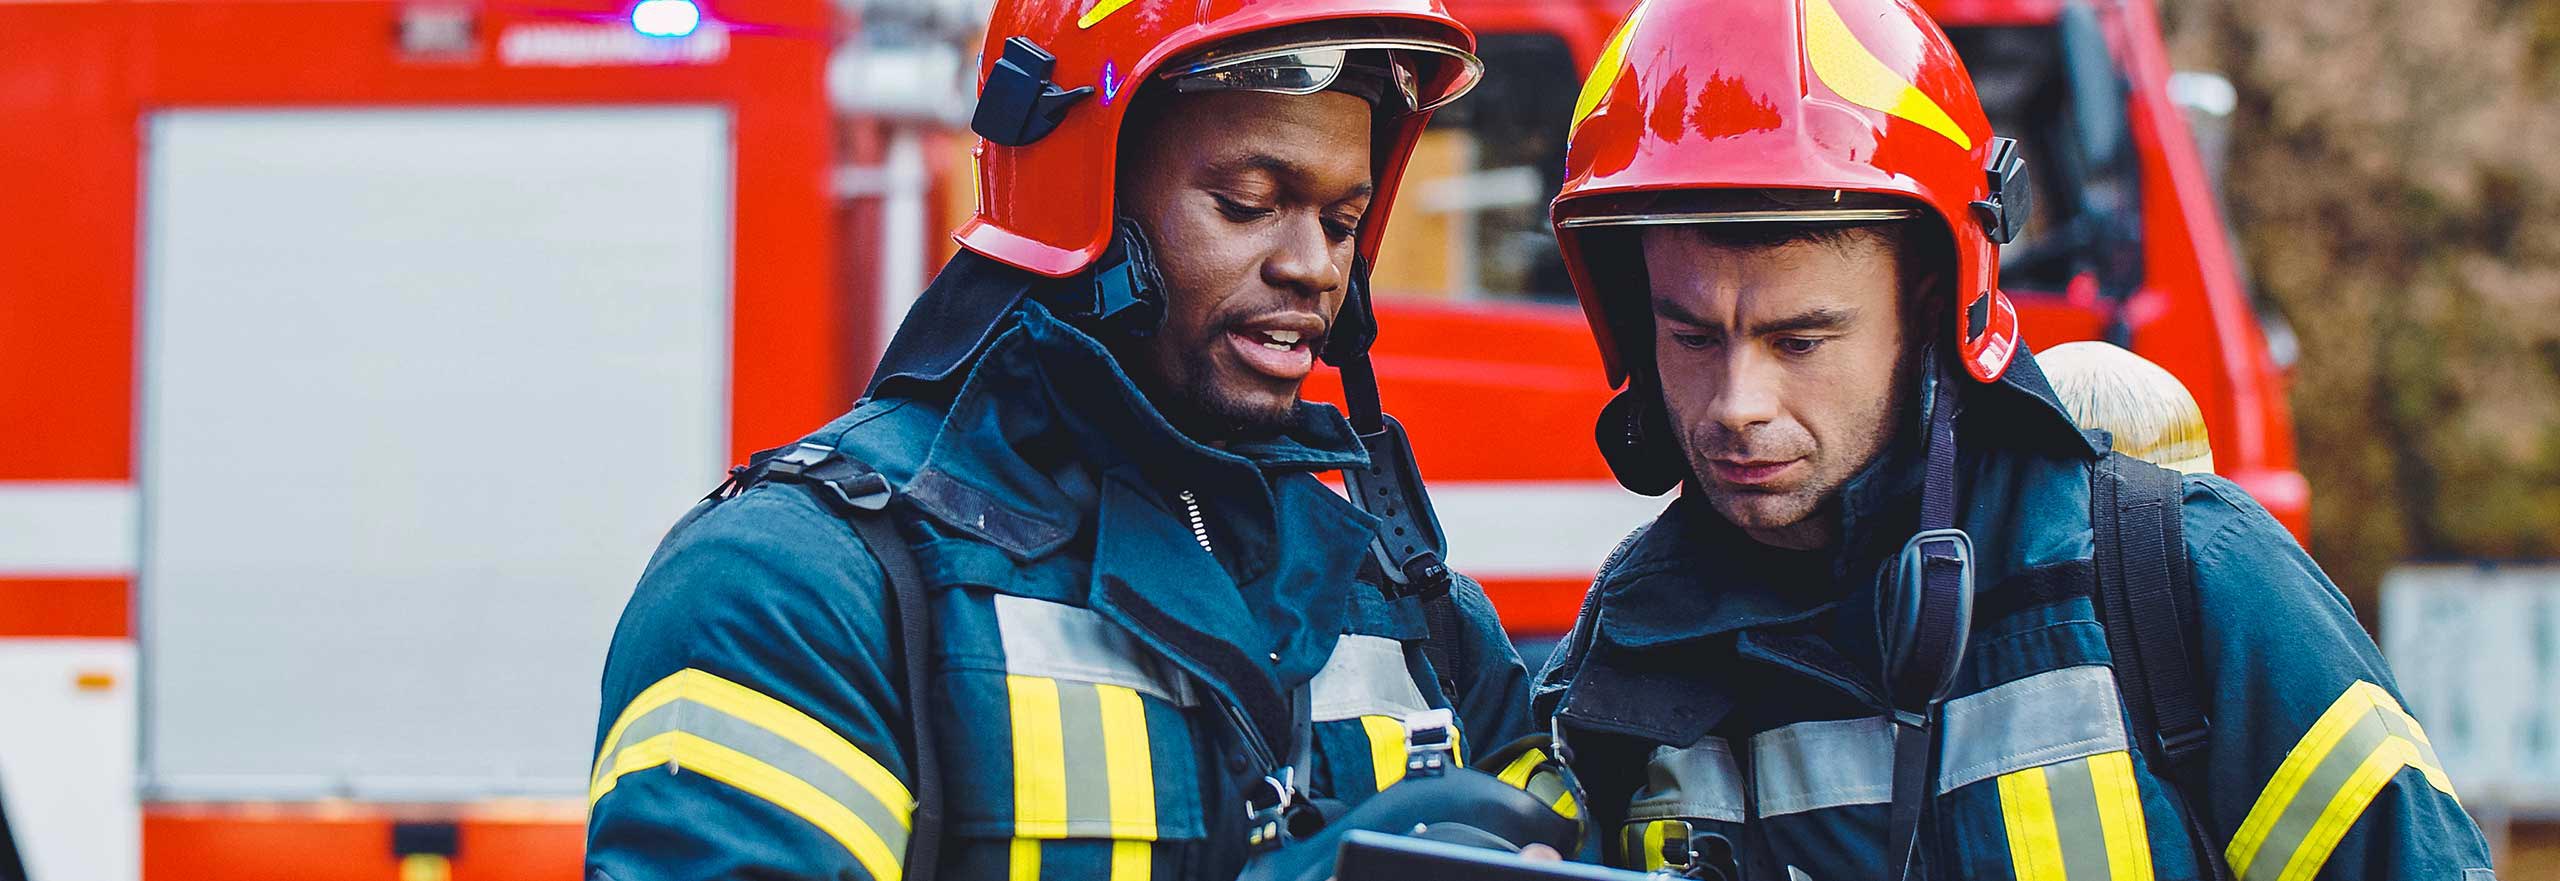 Portrait de deux pompiers luttant contre un incendie ; pompier en tenue de protection portant un casque et qui utilise une tablette durant l’intervention.